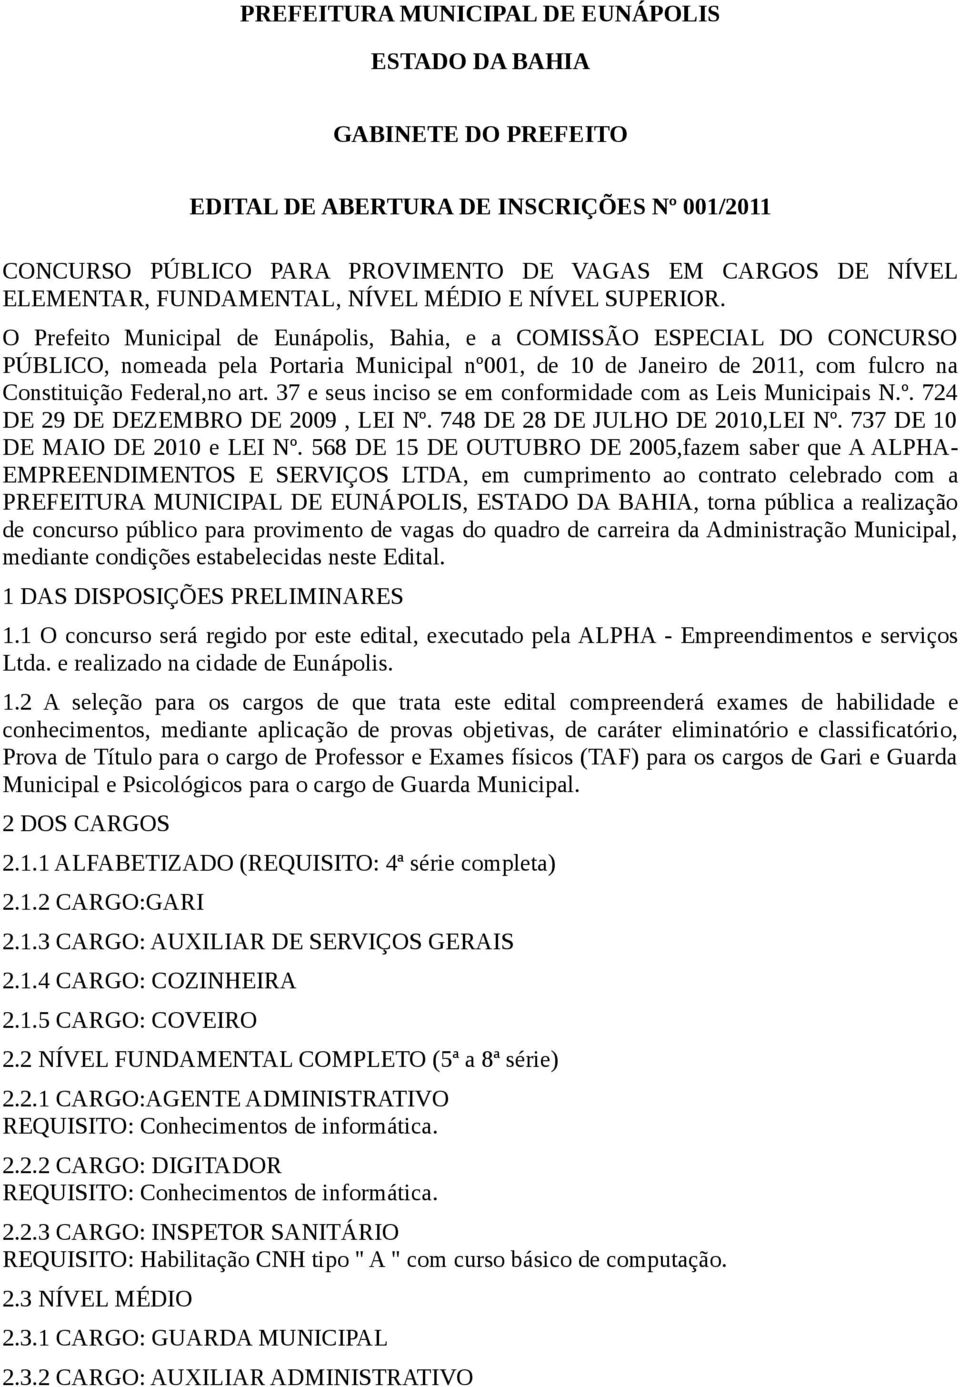 O Prefeito Municipal de Eunápolis, Bahia, e a COMISSÃO ESPECIAL DO CONCURSO PÚBLICO, nomeada pela Portaria Municipal nº001, de 10 de Janeiro de 2011, com fulcro na Constituição Federal,no art.